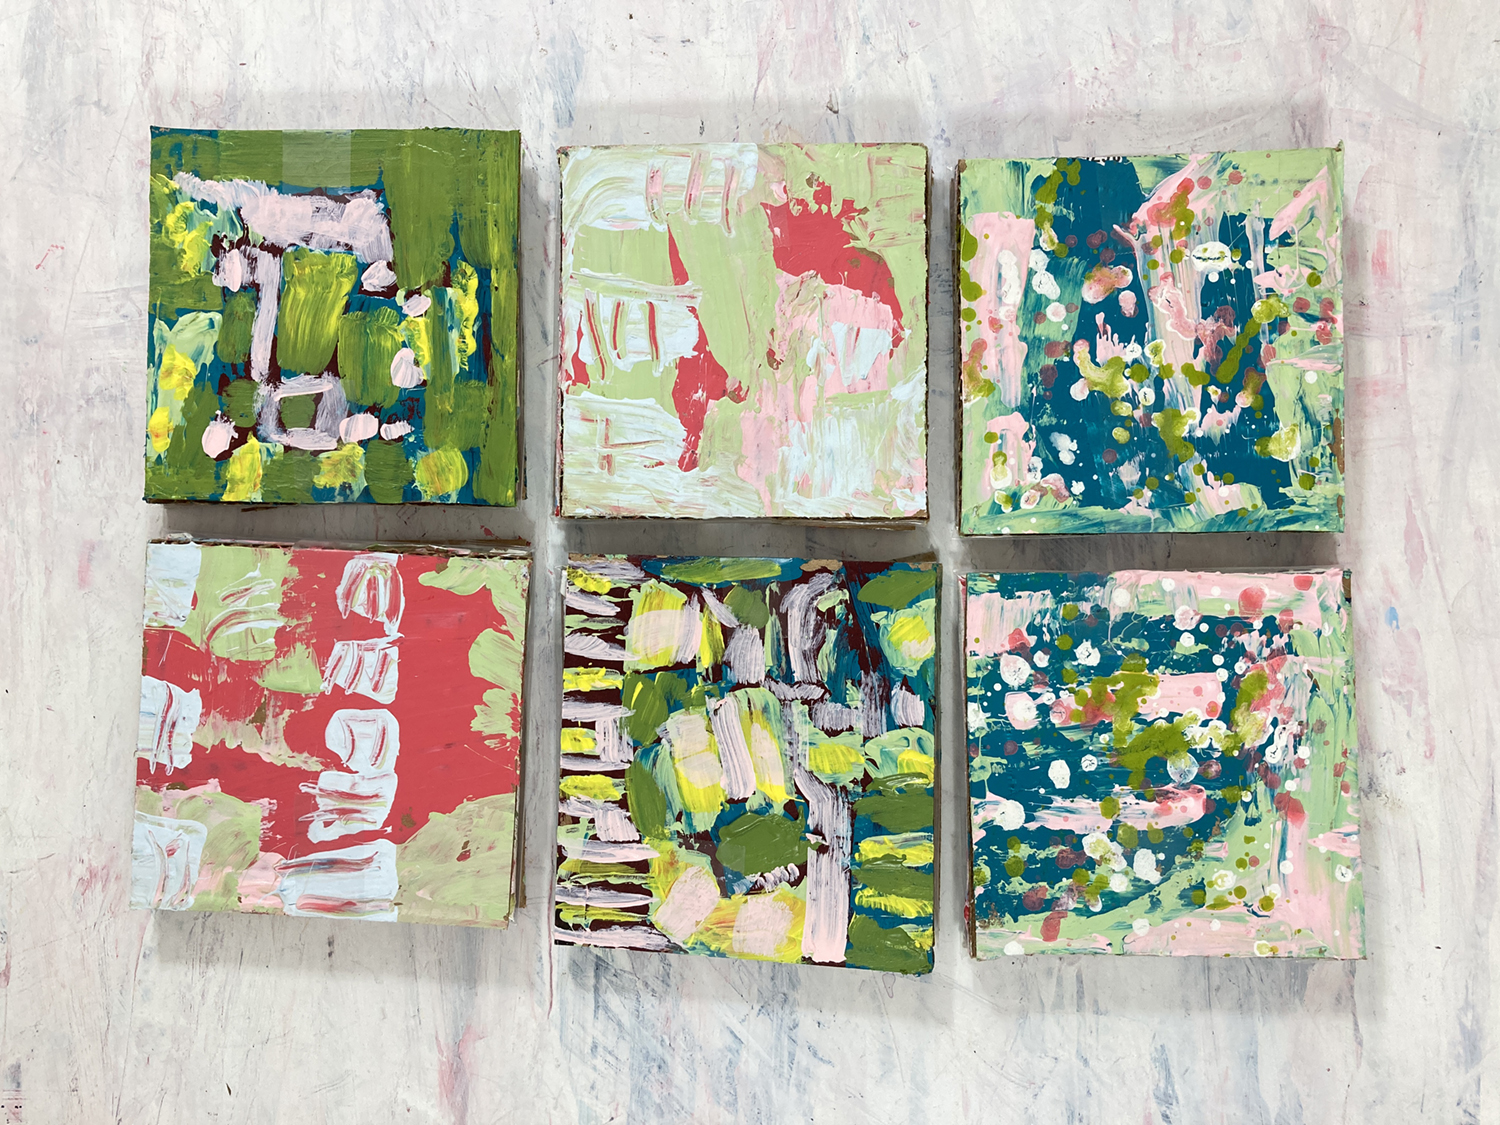 Katie Jeanne Wood - Packaging for paintings